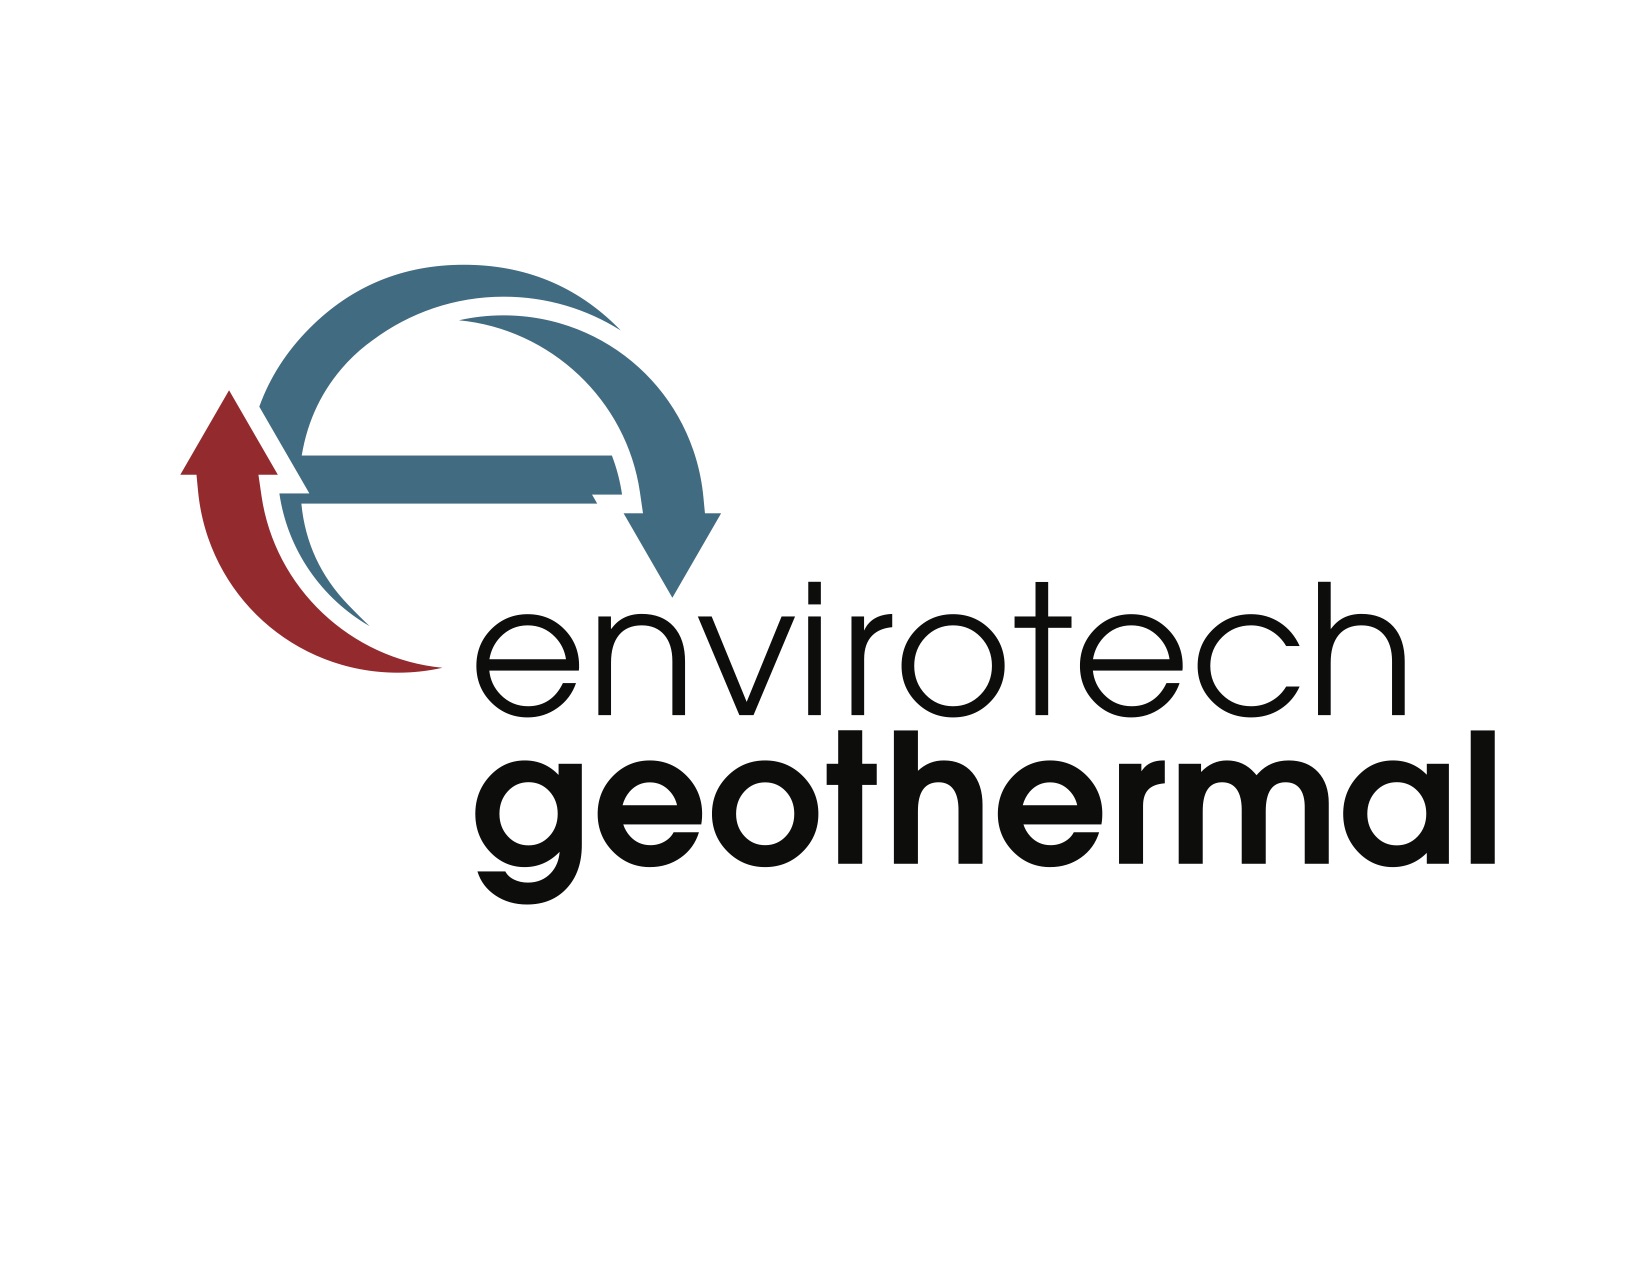 Envirotech Geothermal